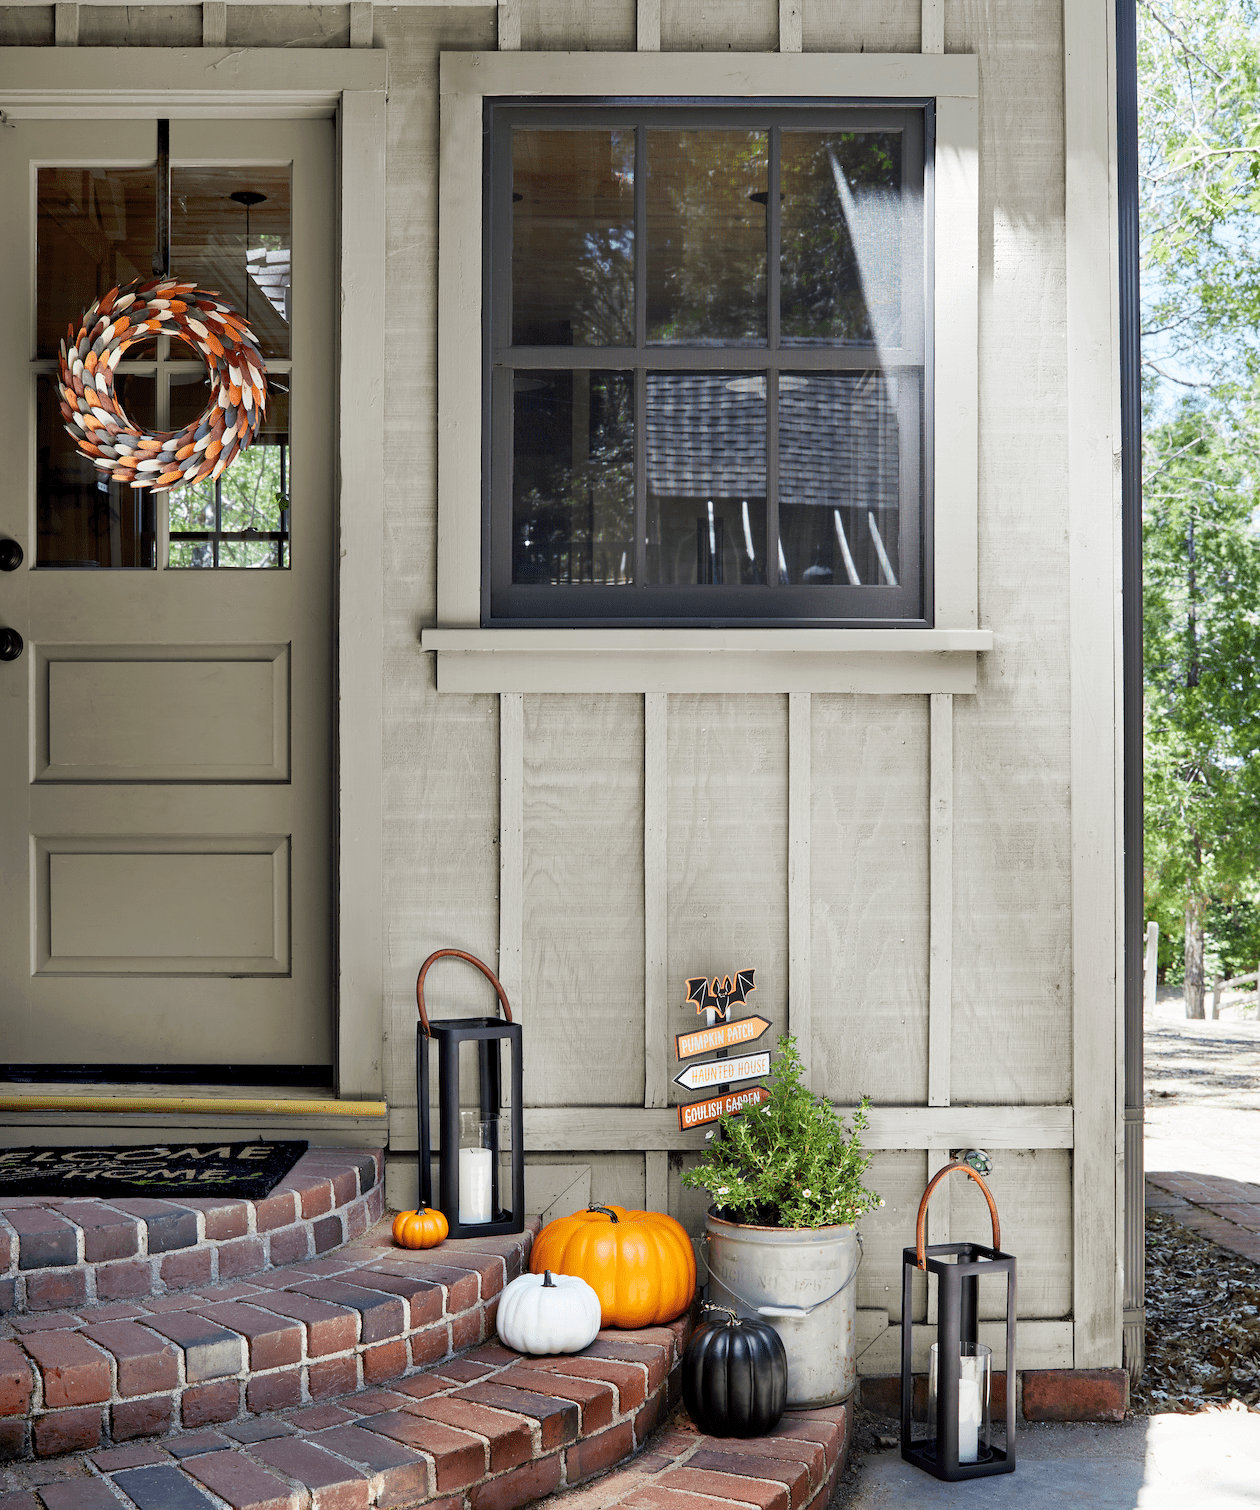 idéias de decoração de porta de outono grinalda de papel